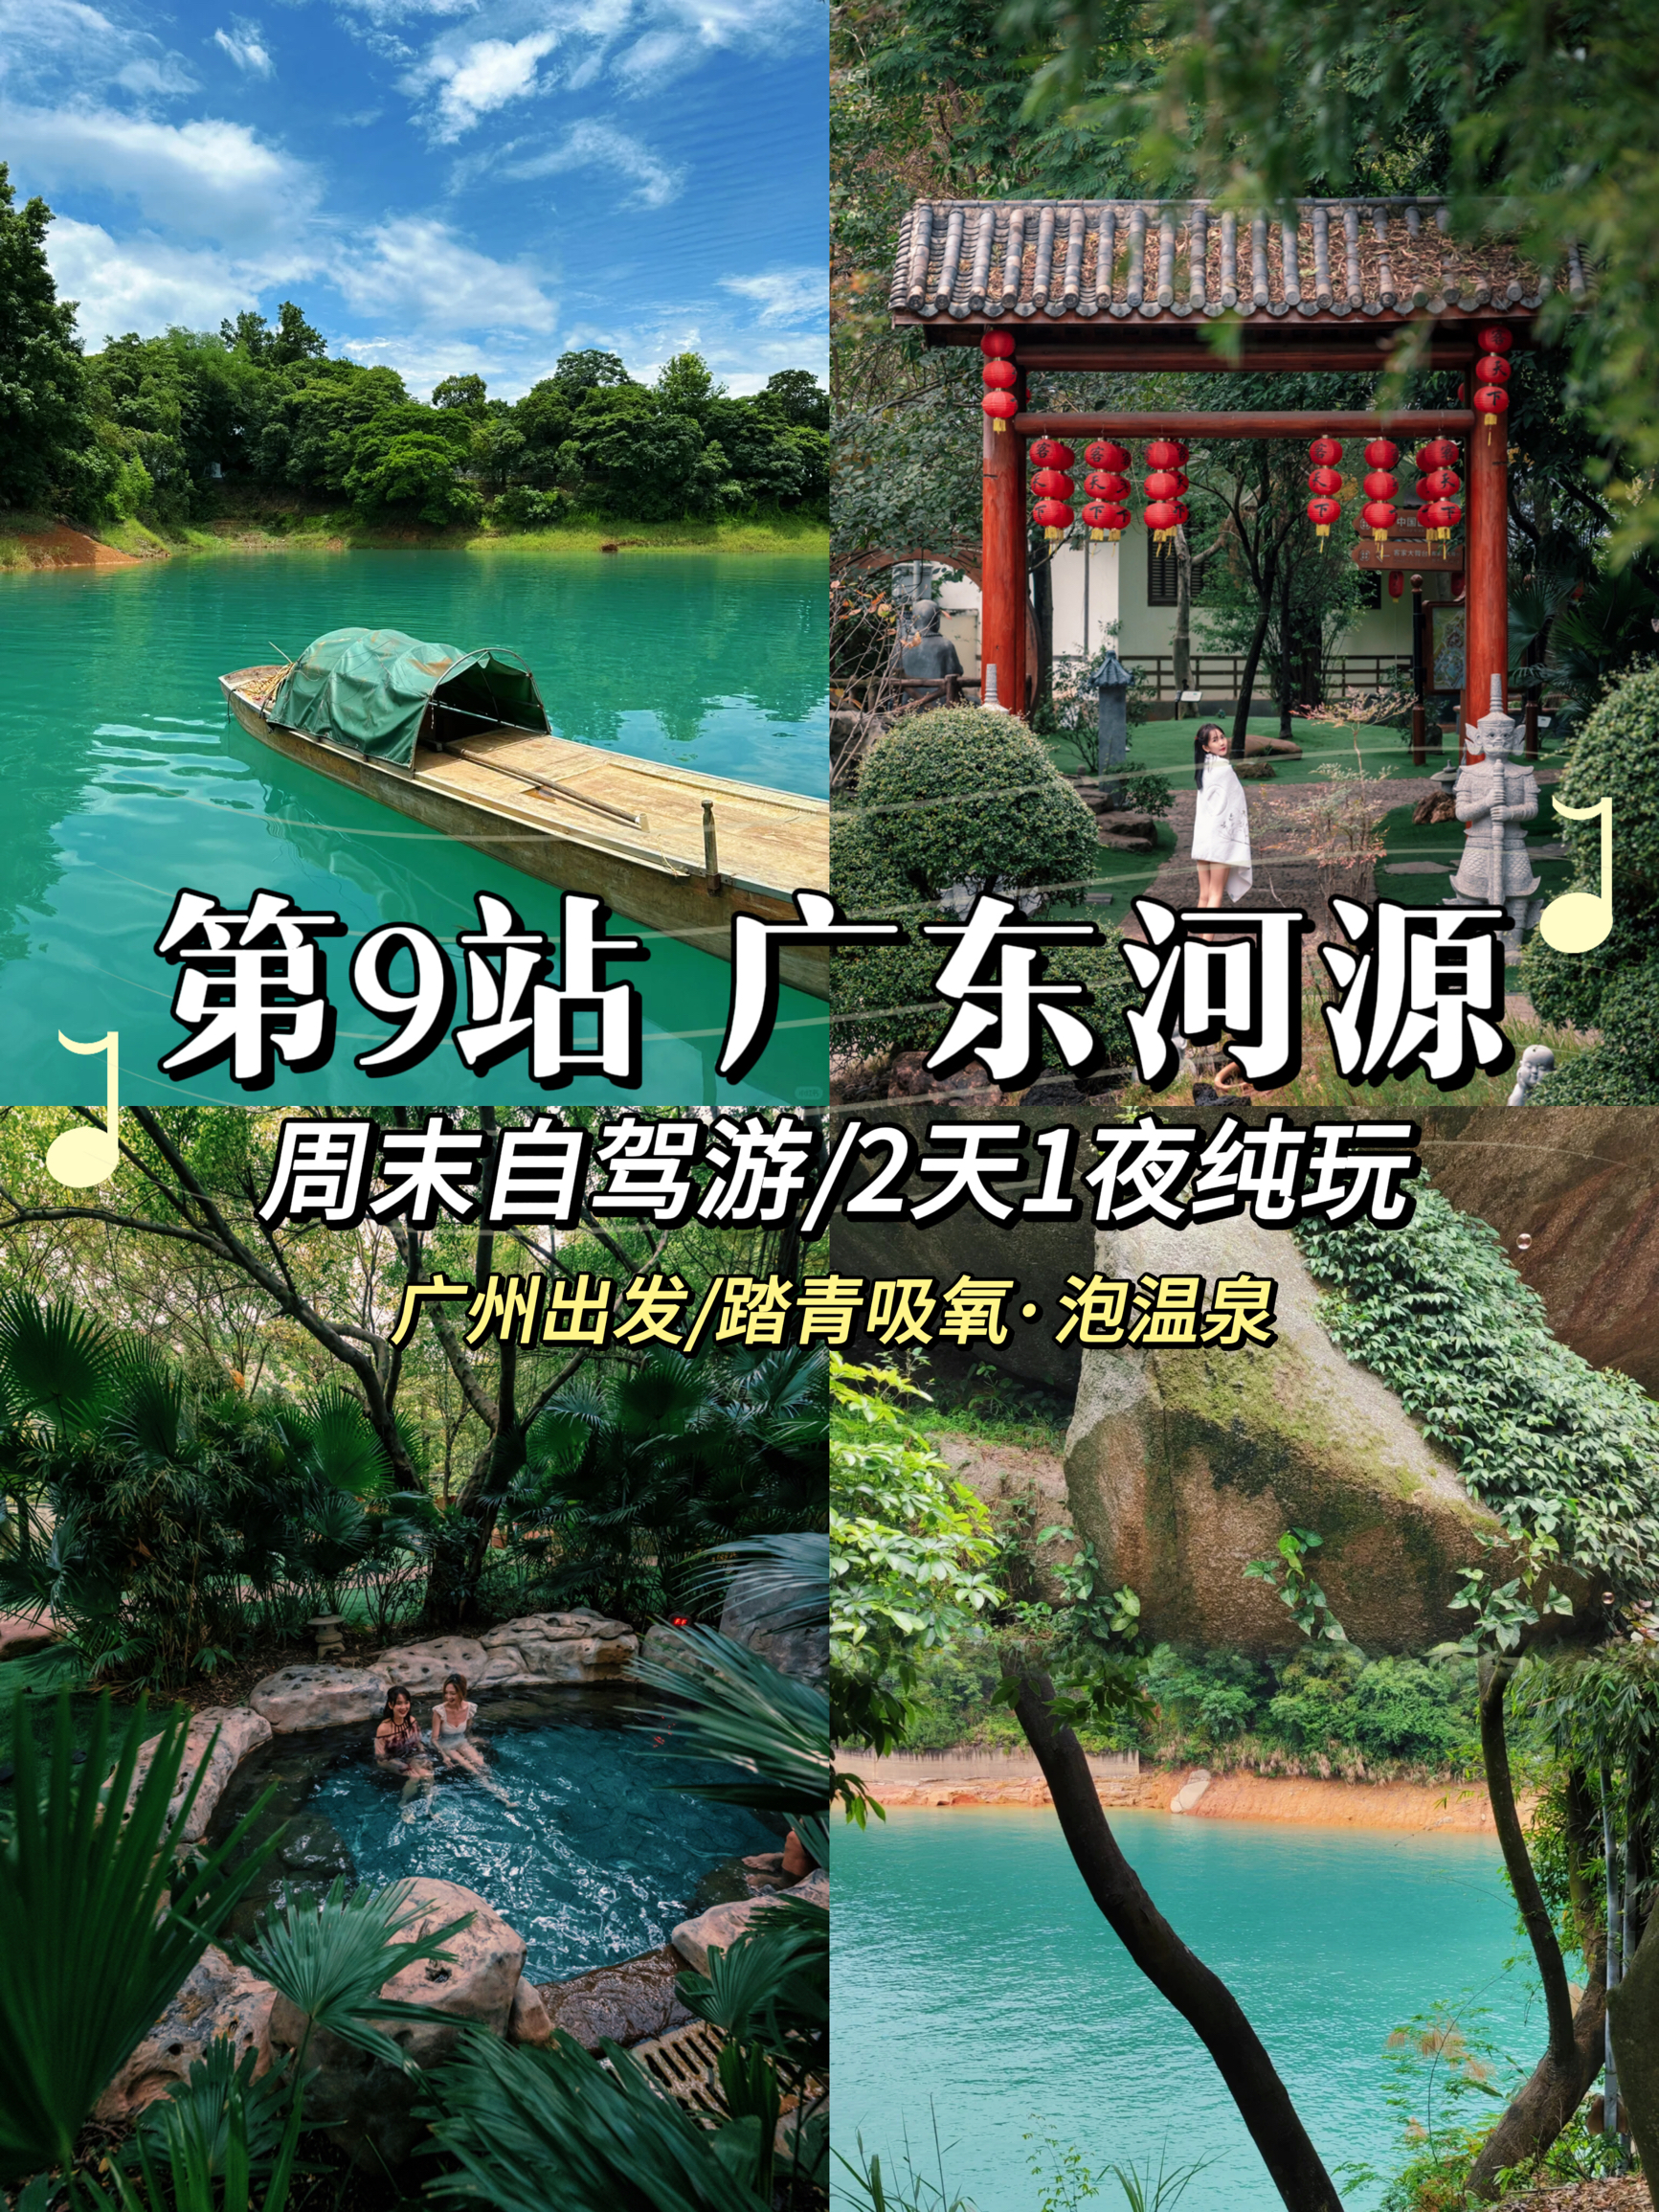 广州打工人挑战每周出去玩第9站-河源